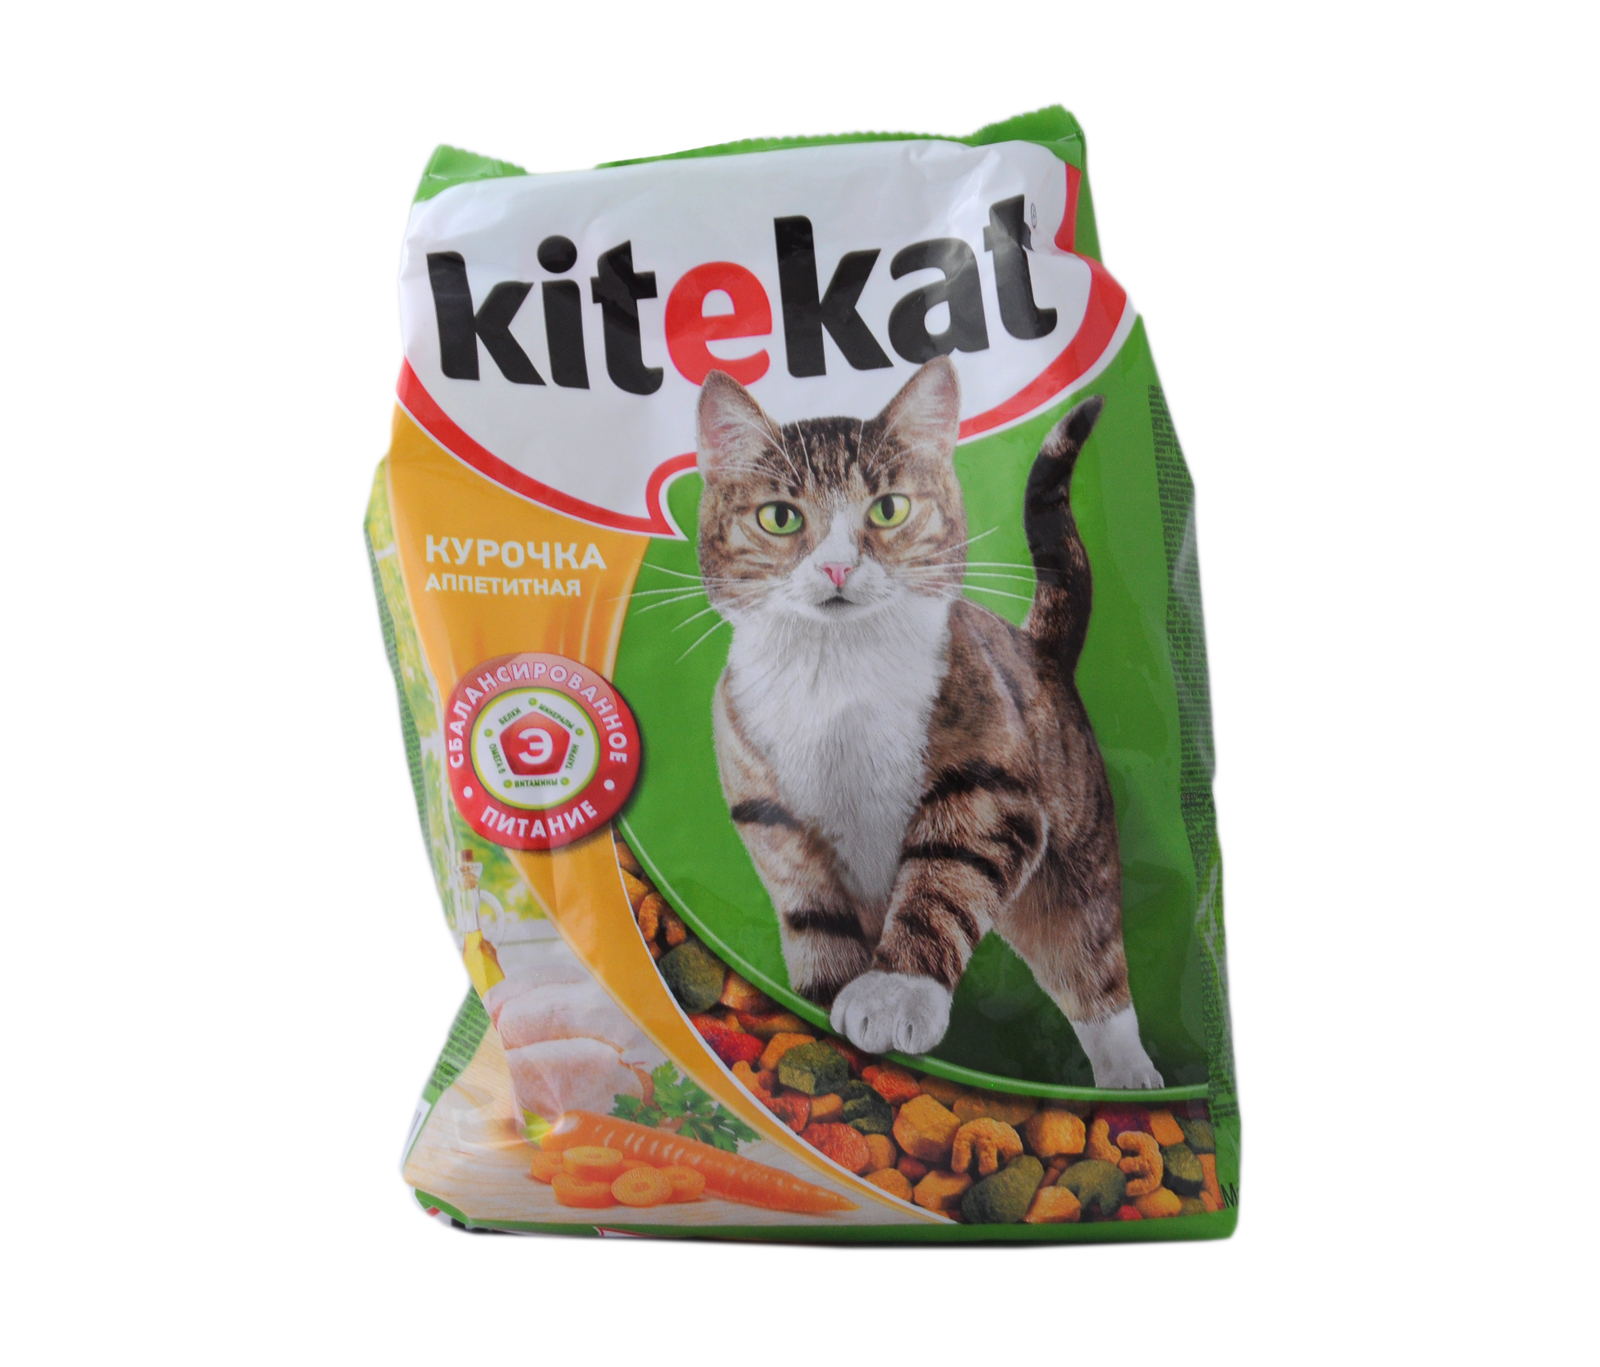 kitekat cat food